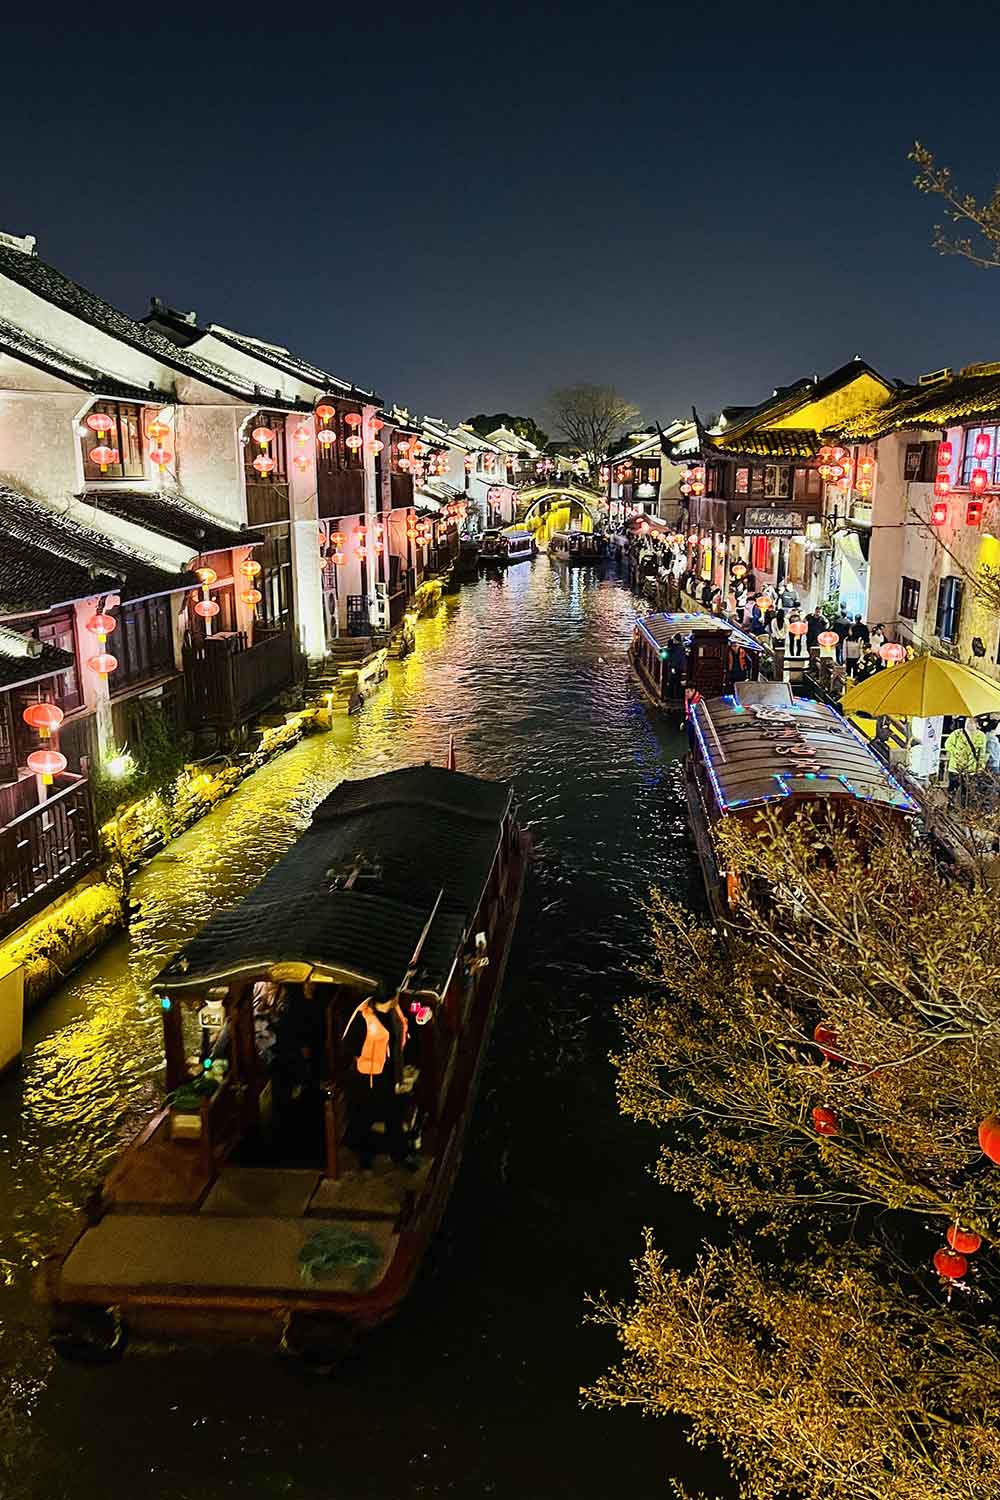 Visiter Suzhou pendant un voyage en Chine